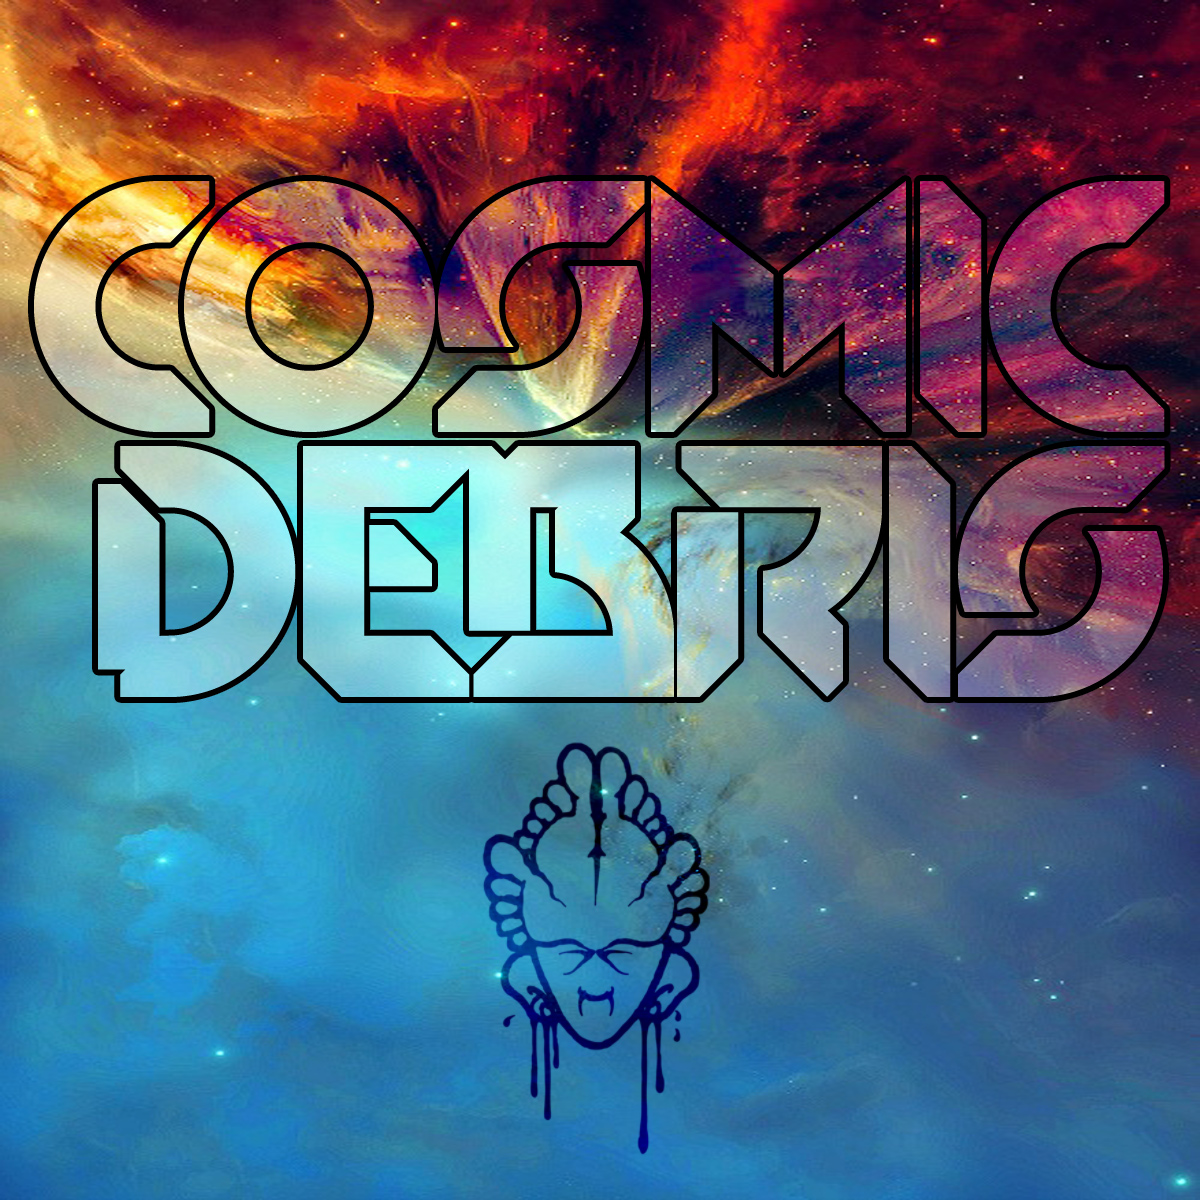 Cosmic Debris